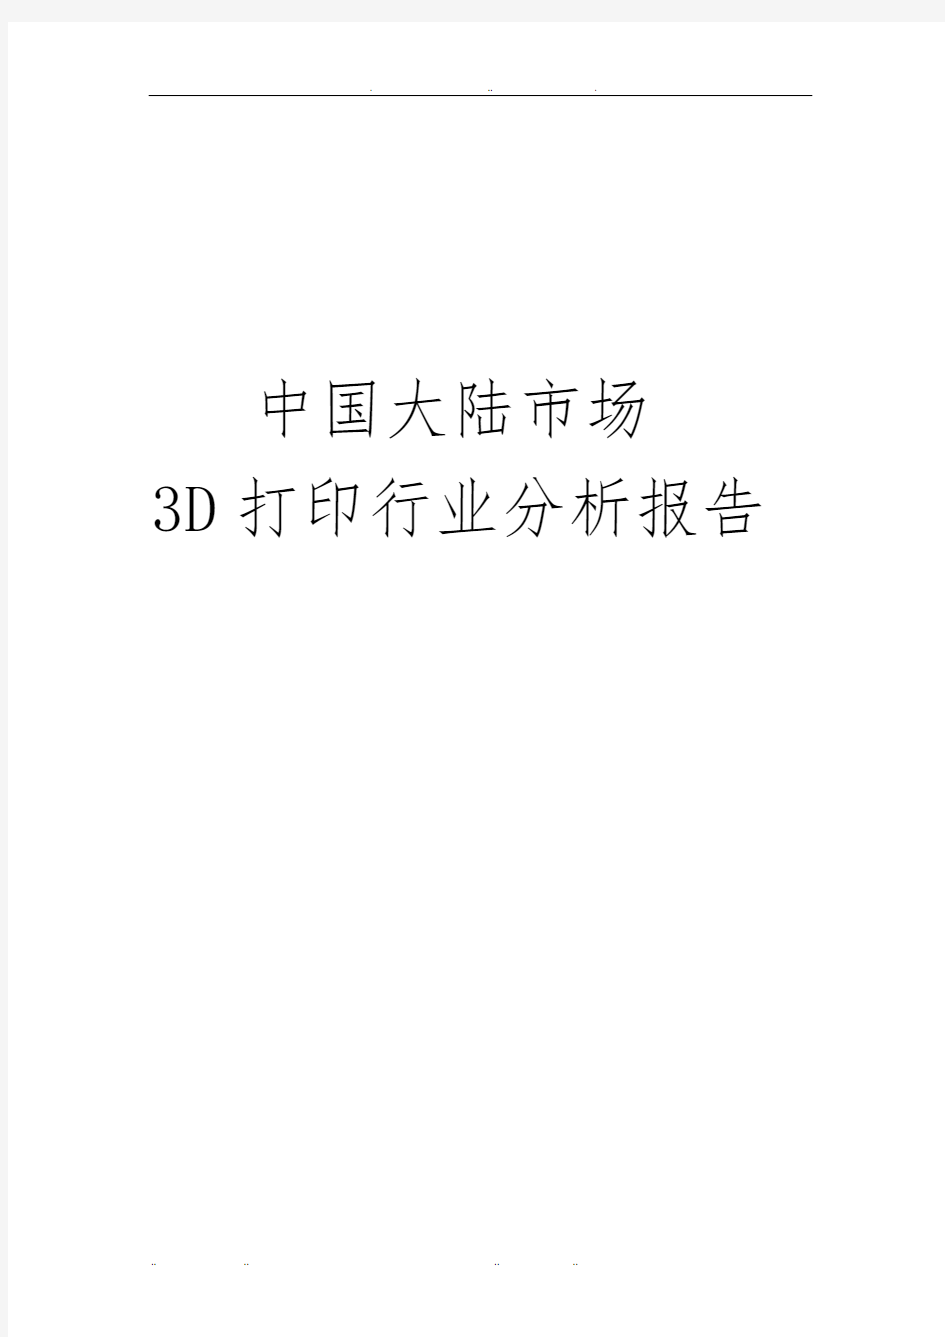 中国大陆市场3D打印行业分析报告文案